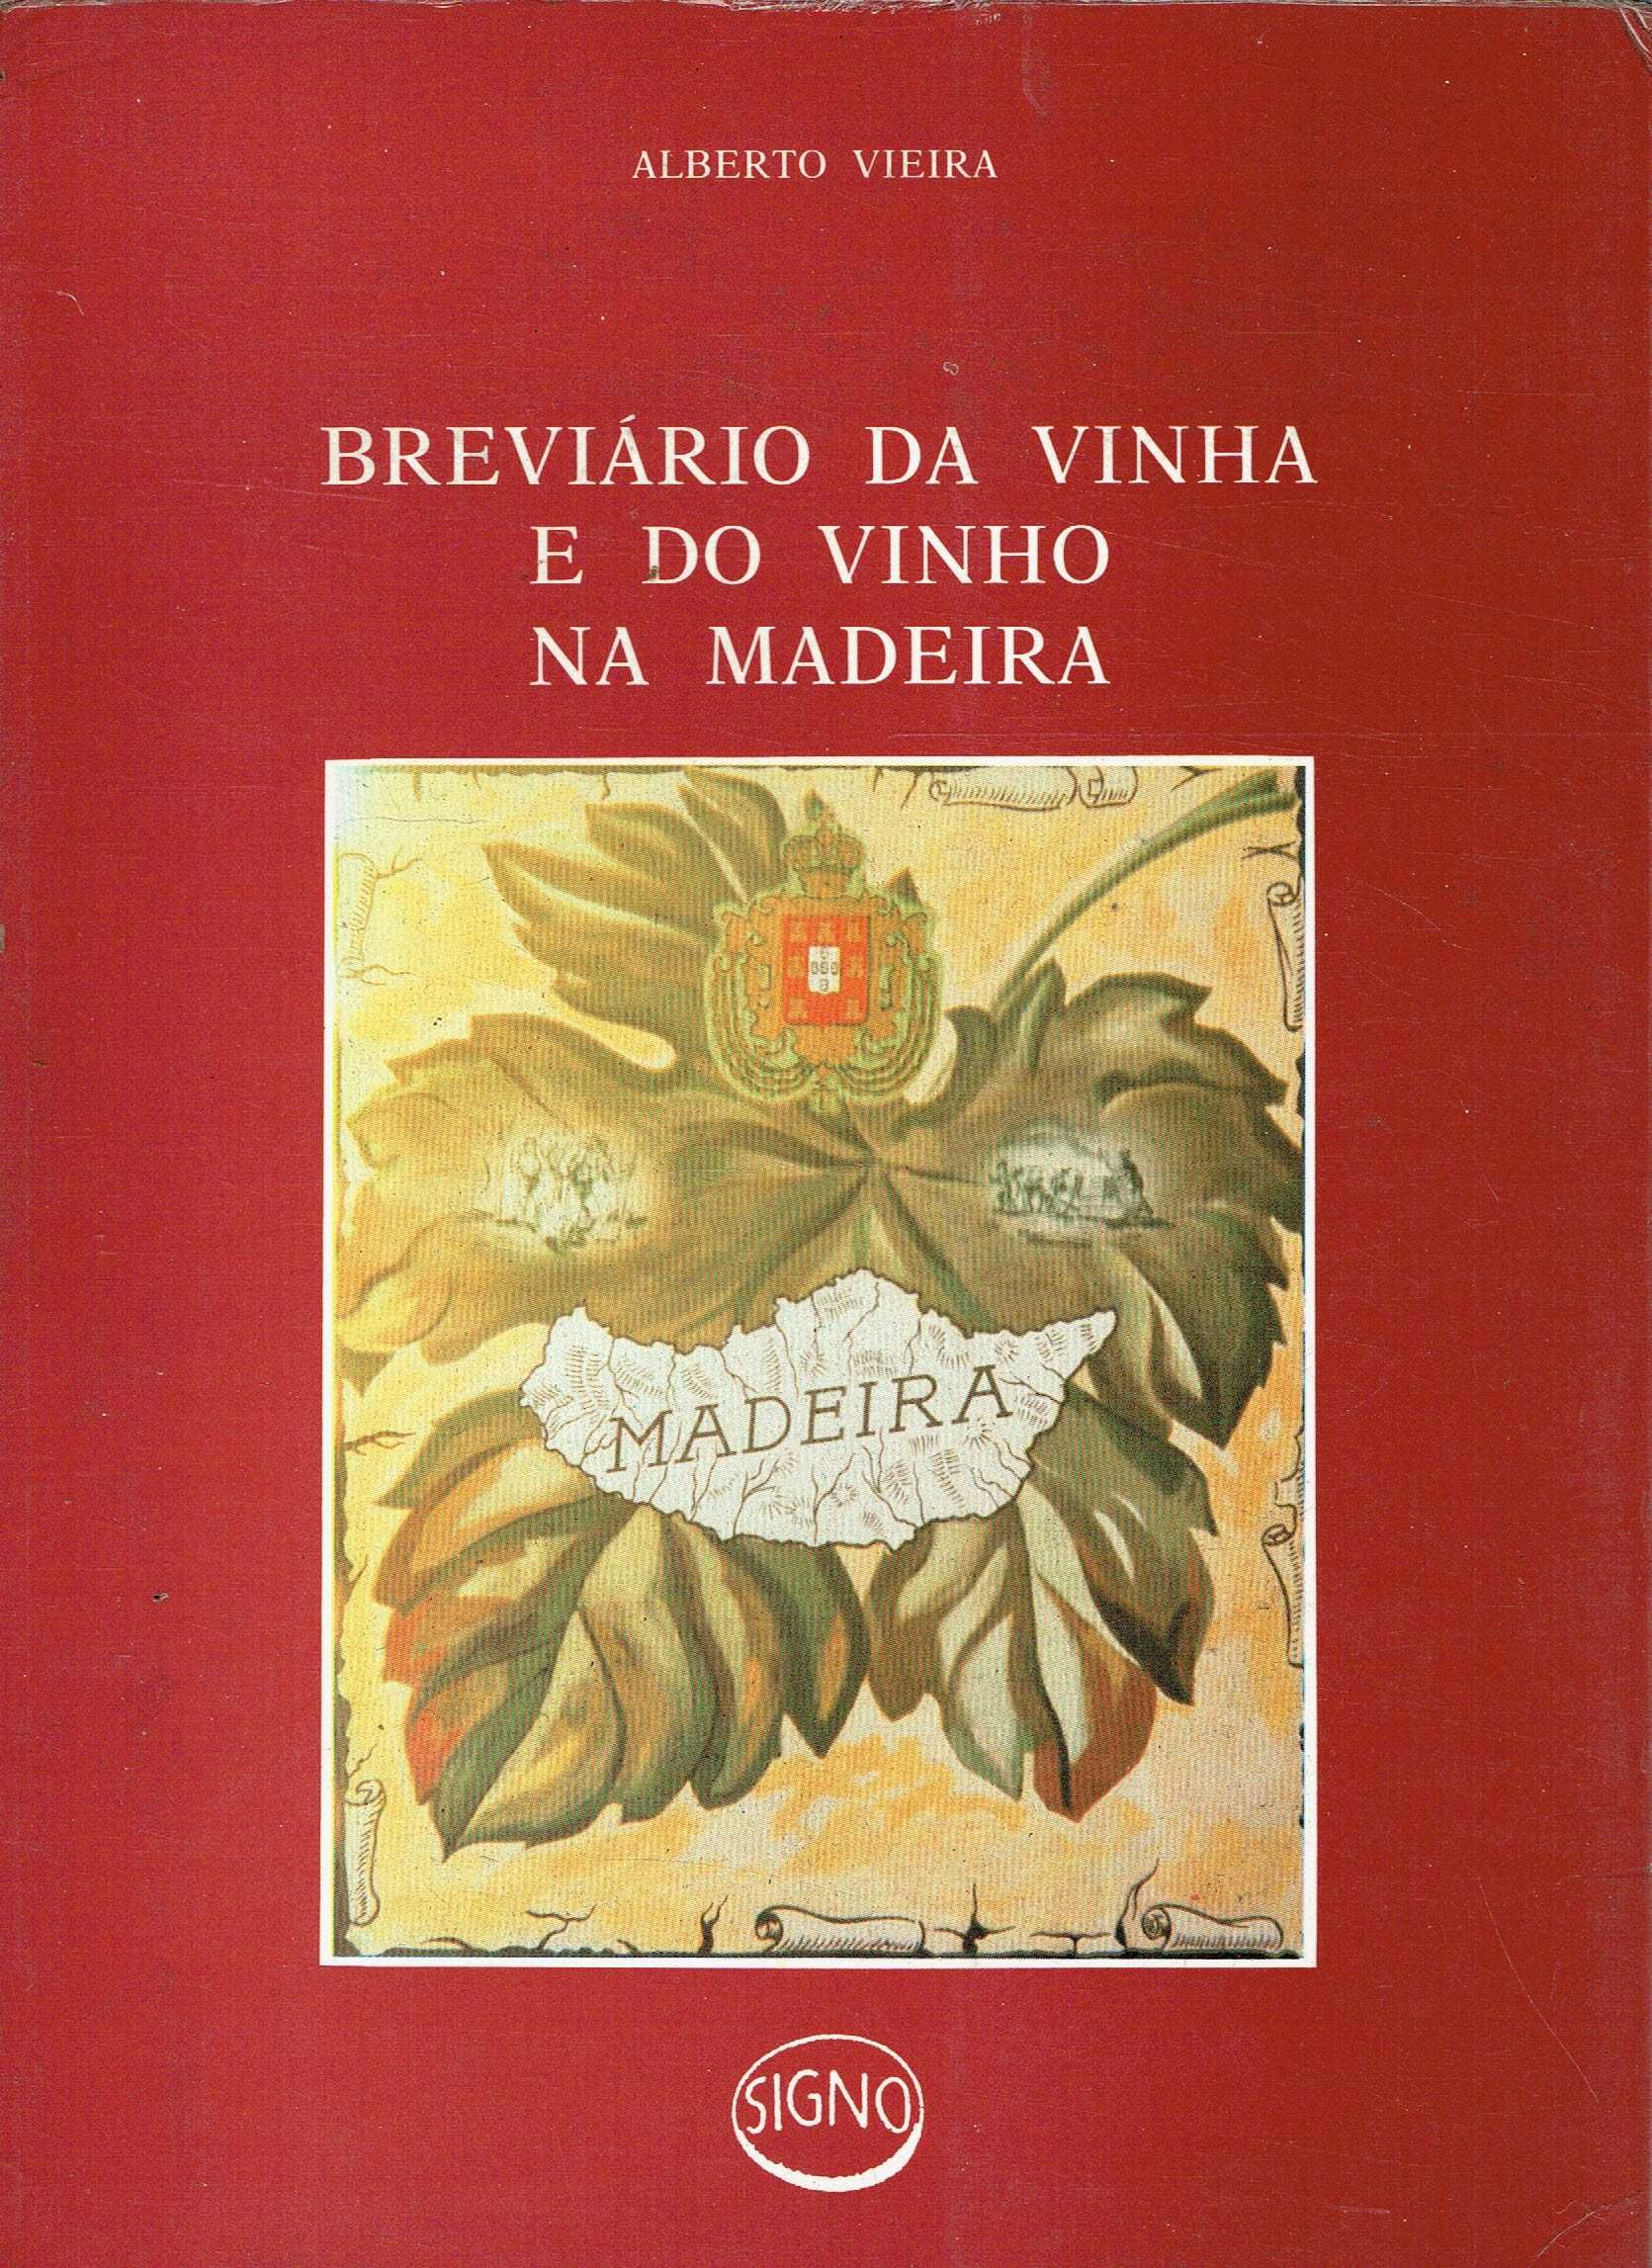 2145

Breviário da vinha e do vinho da Madeira  
de Alberto Vieira.